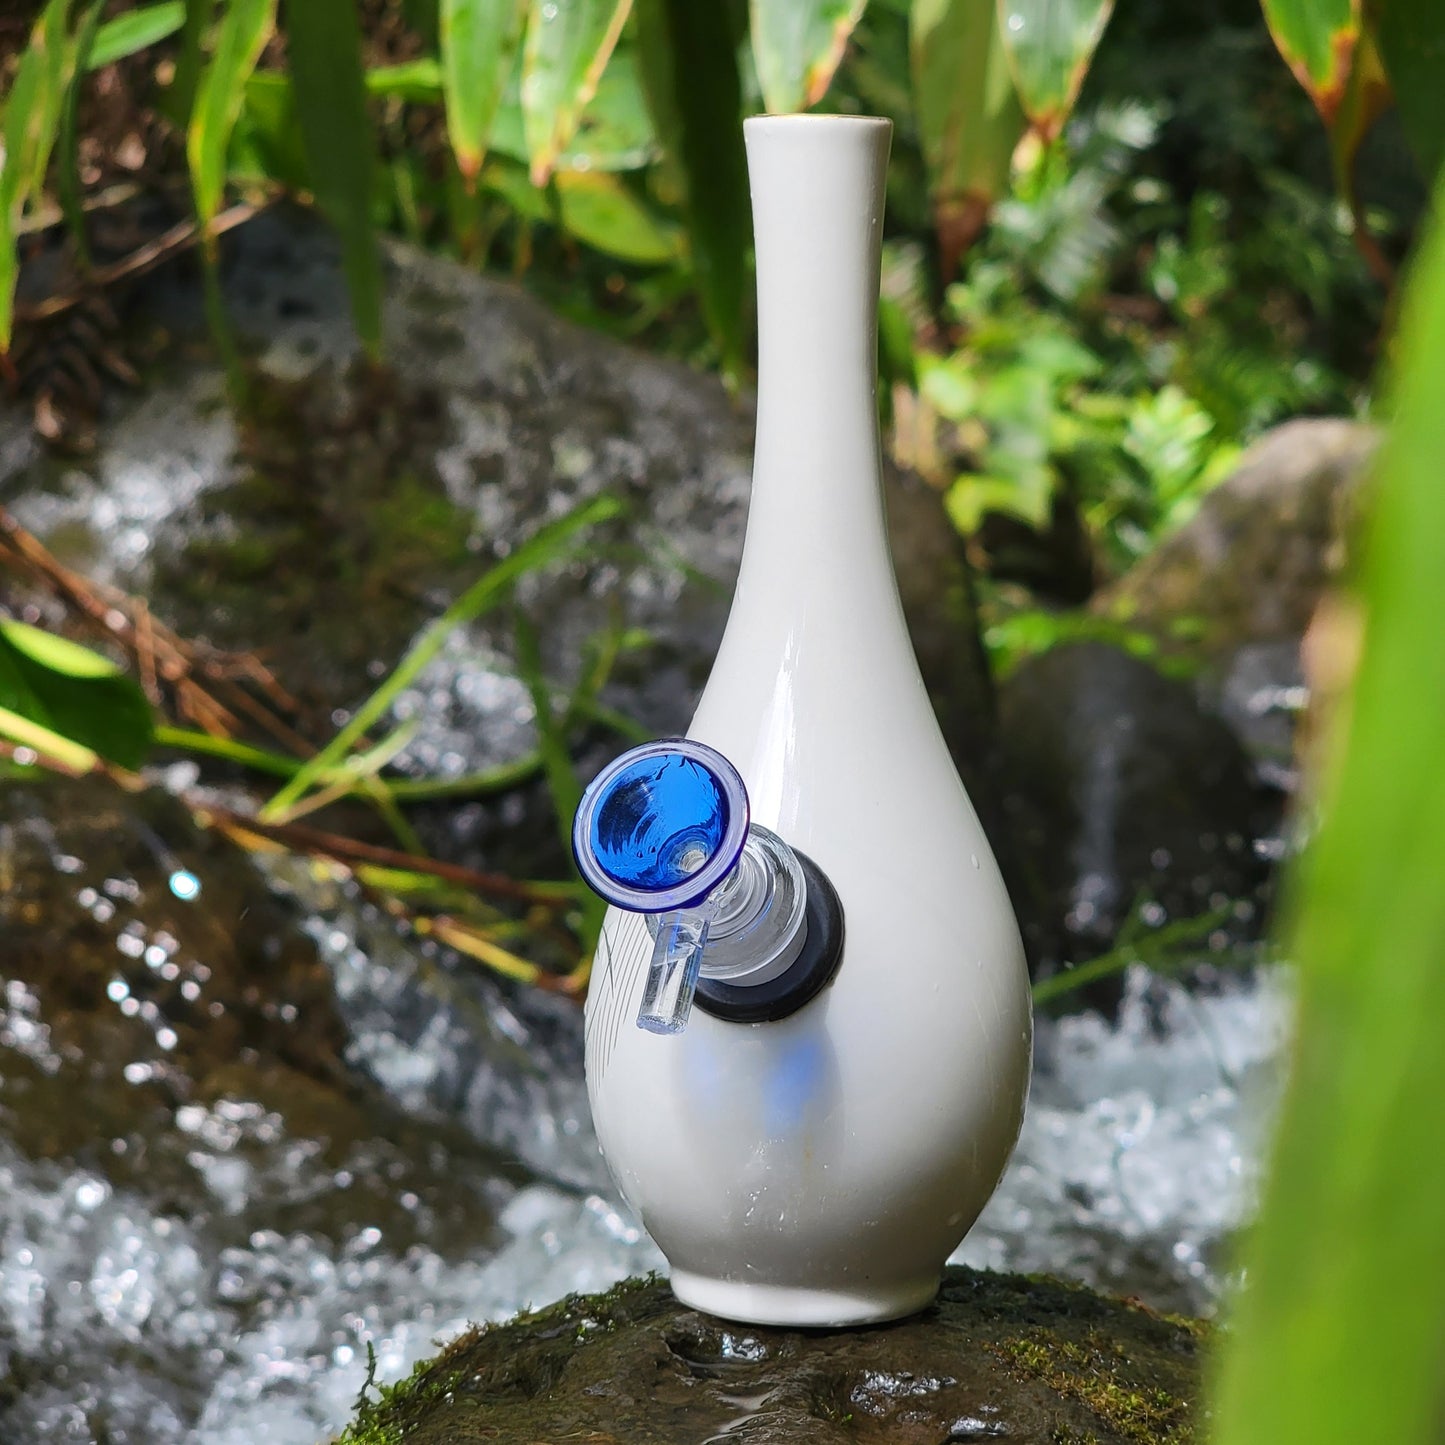 "Blue Iris" Vintage Upcycled Japanese Upcycled Ceramic Bud Vase Bong